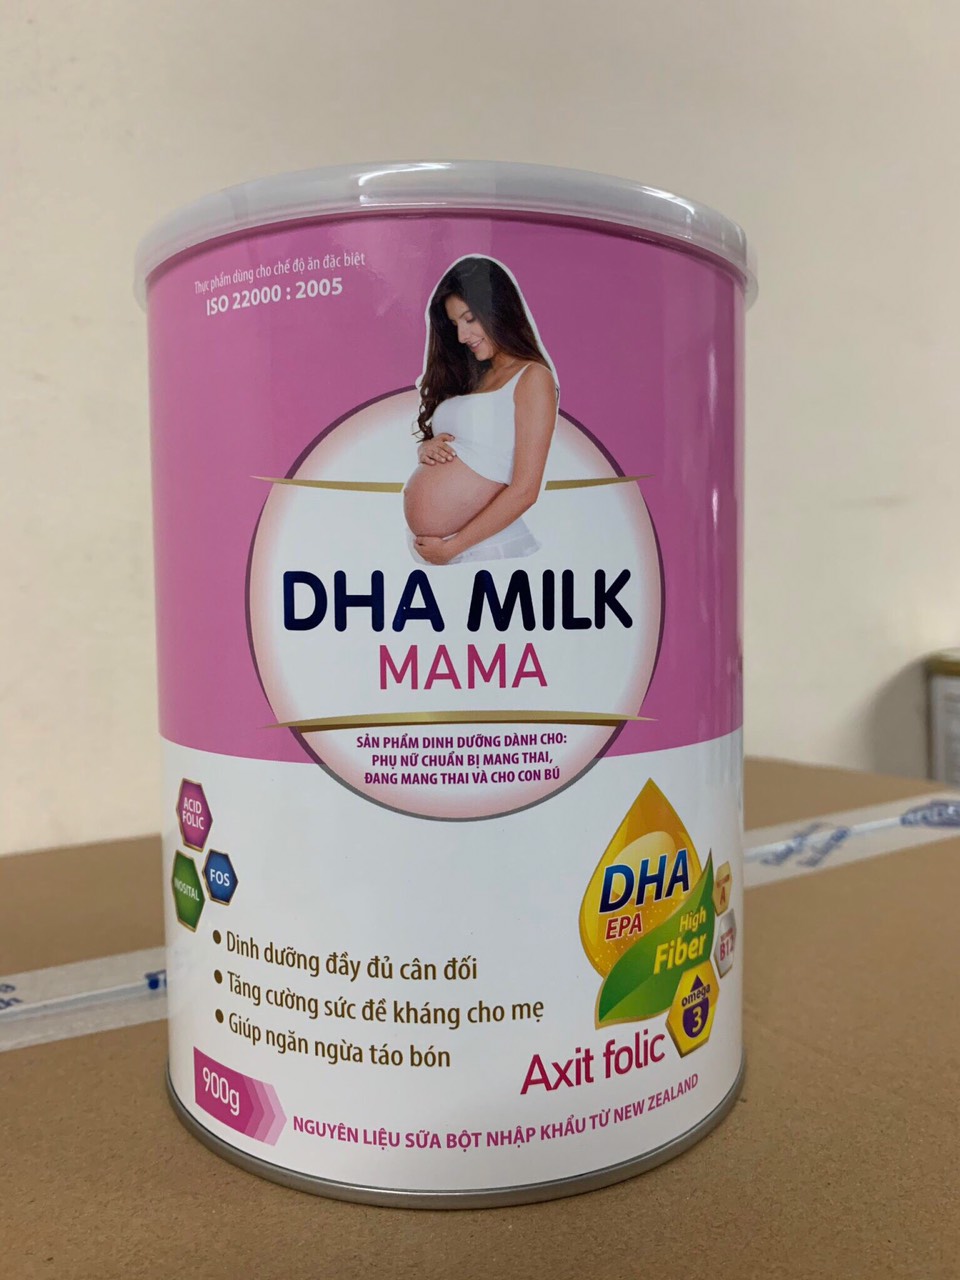 Sữa DHA Milk MAMA 400g Dành cho Phụ nữ chuẩn bị Mang thai, đang mang thai và cho con bú